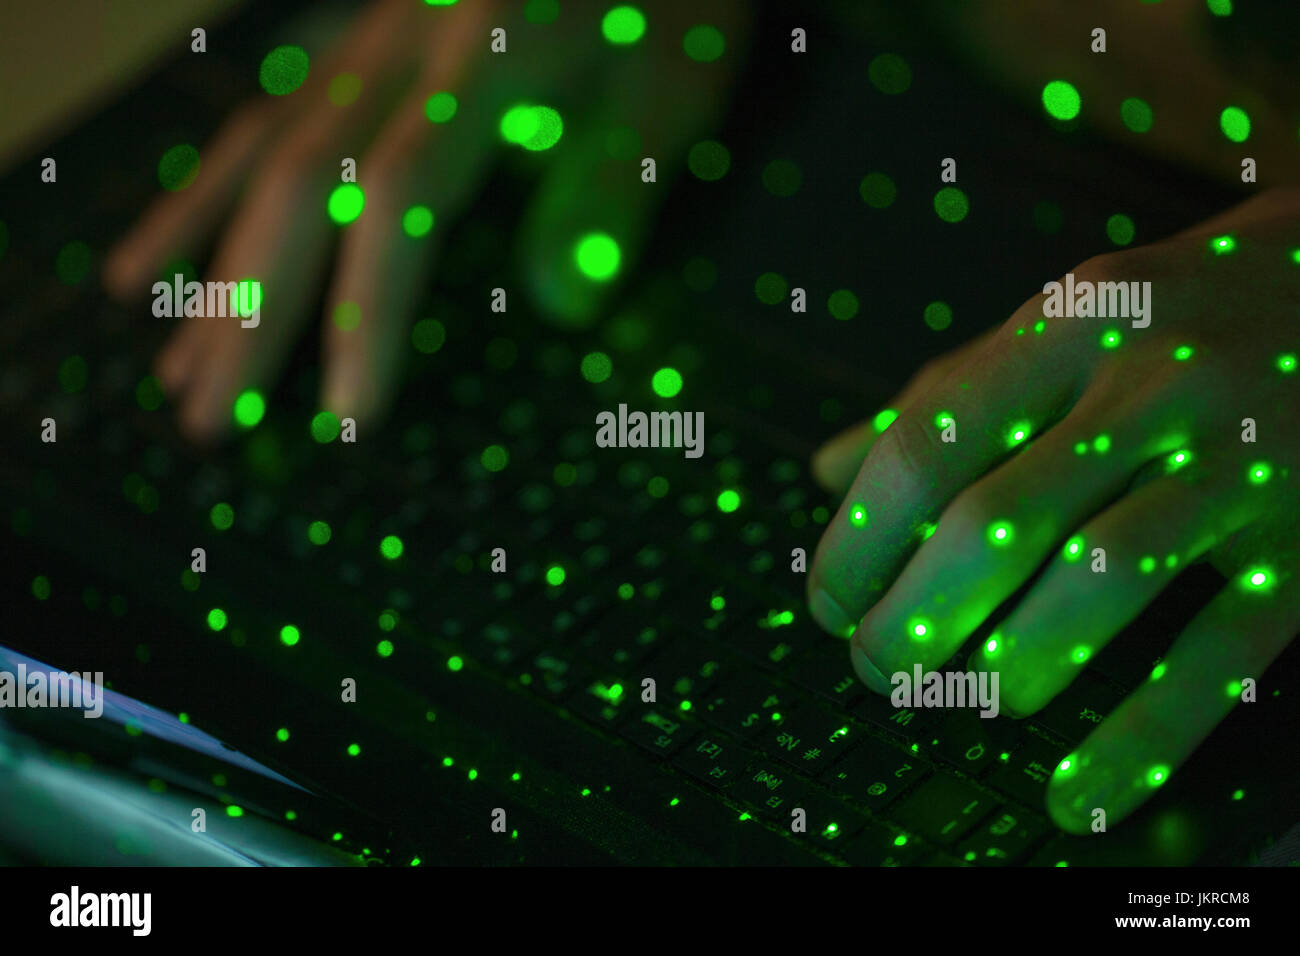 Close-up of green lights sur les mains coupées à l'aide du clavier d'ordinateur portable Banque D'Images